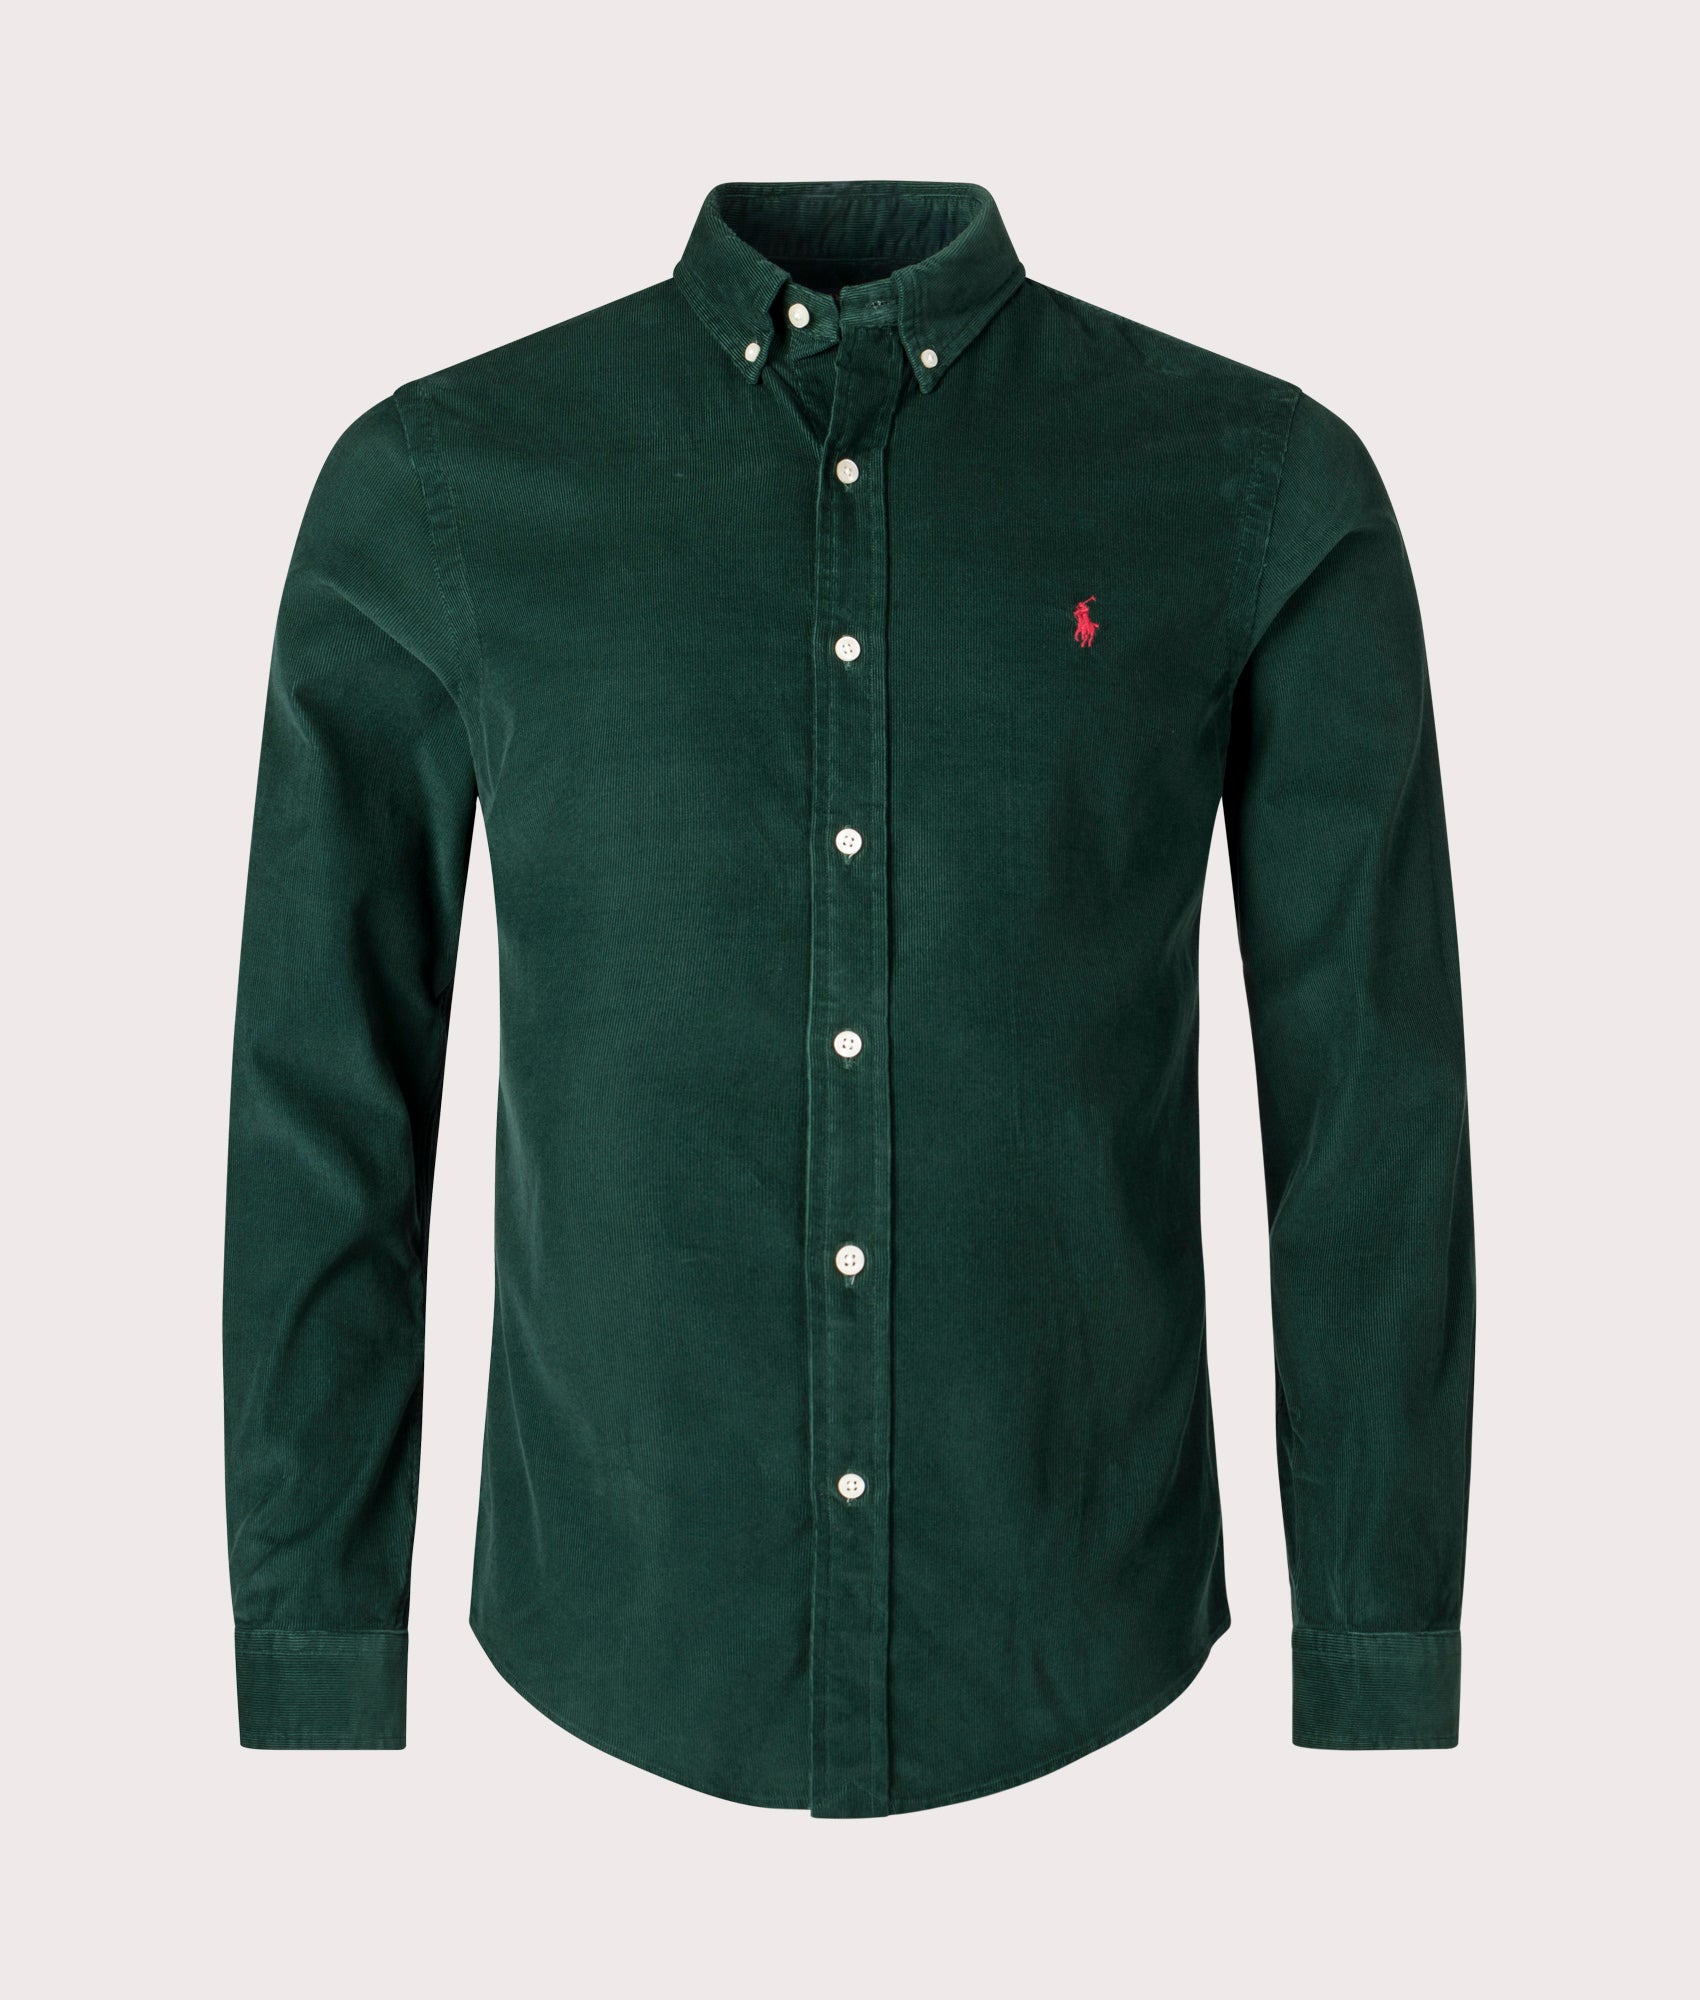 Polo Ralph Lauren Mens Slim Fit Corduroy Shirt - Colour: 018 Moss Agate - Size: Medium